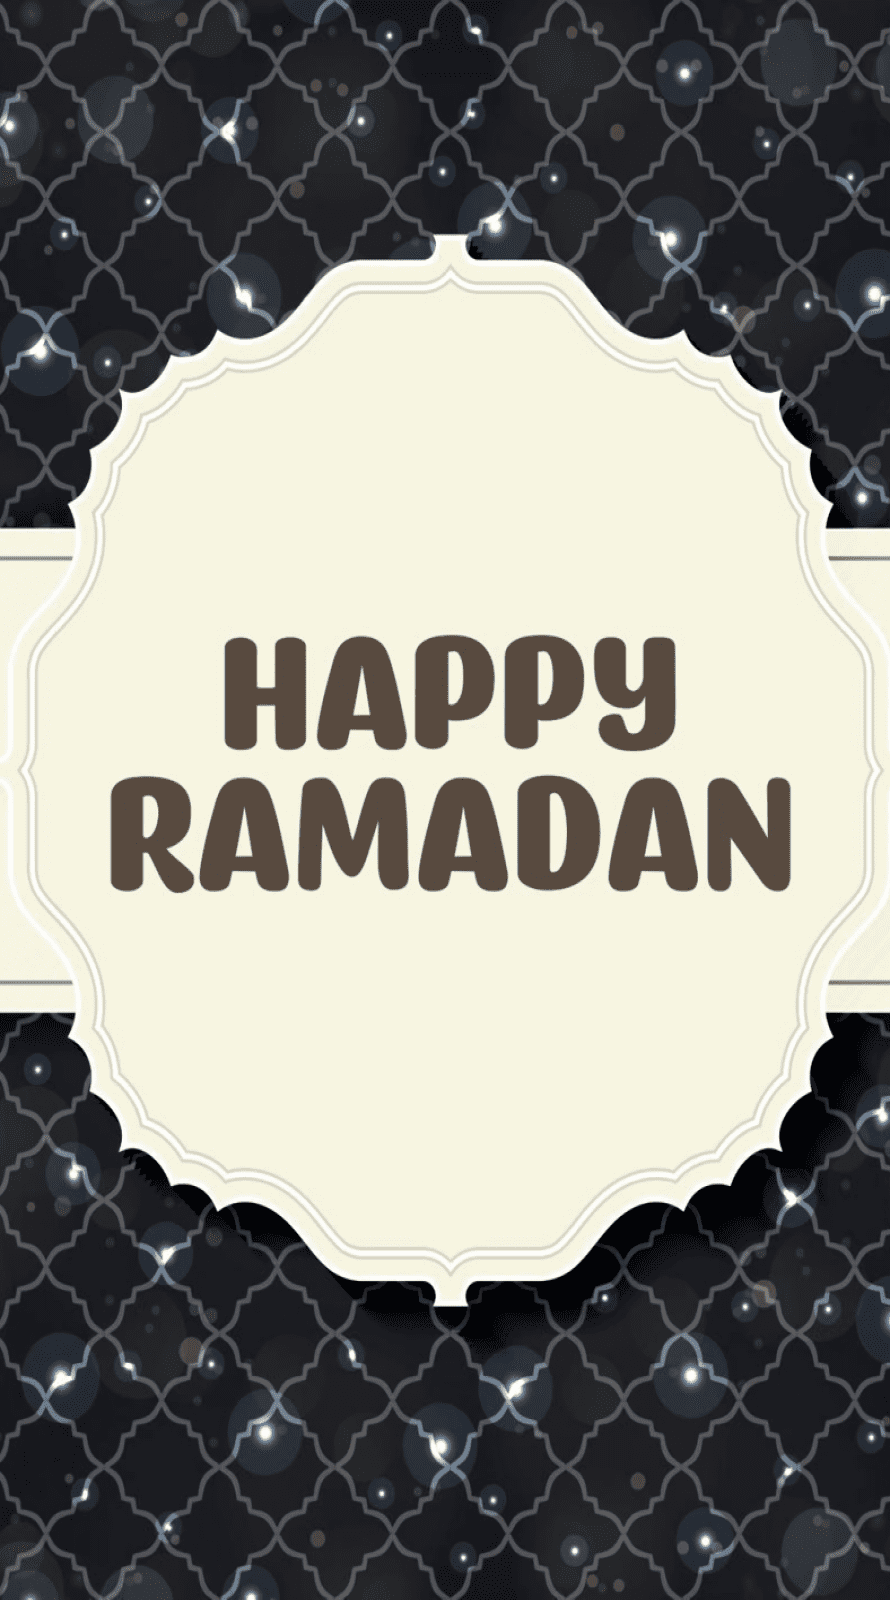 Ramadan kareem wallpaper for iPhone